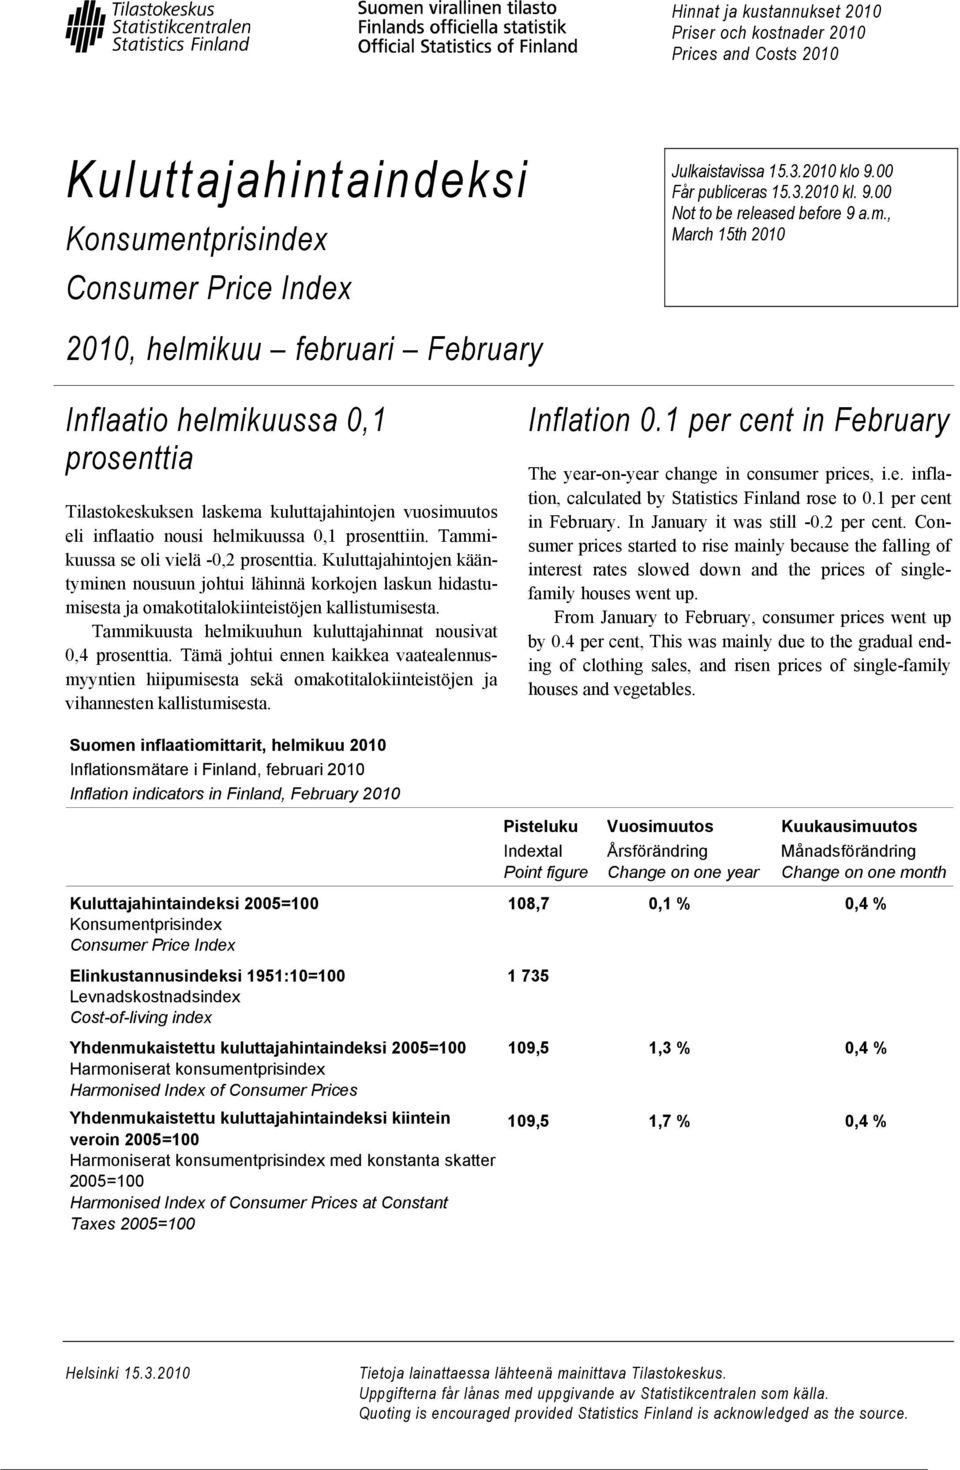 , March 15th 2010 Inflaatio helmikuussa 0,1 prosenttia Tilastokeskuksen laskema kuluttajahintojen vuosimuutos eli inflaatio nousi helmikuussa 0,1 prosenttiin. Tammikuussa se oli vielä -0,2 prosenttia.